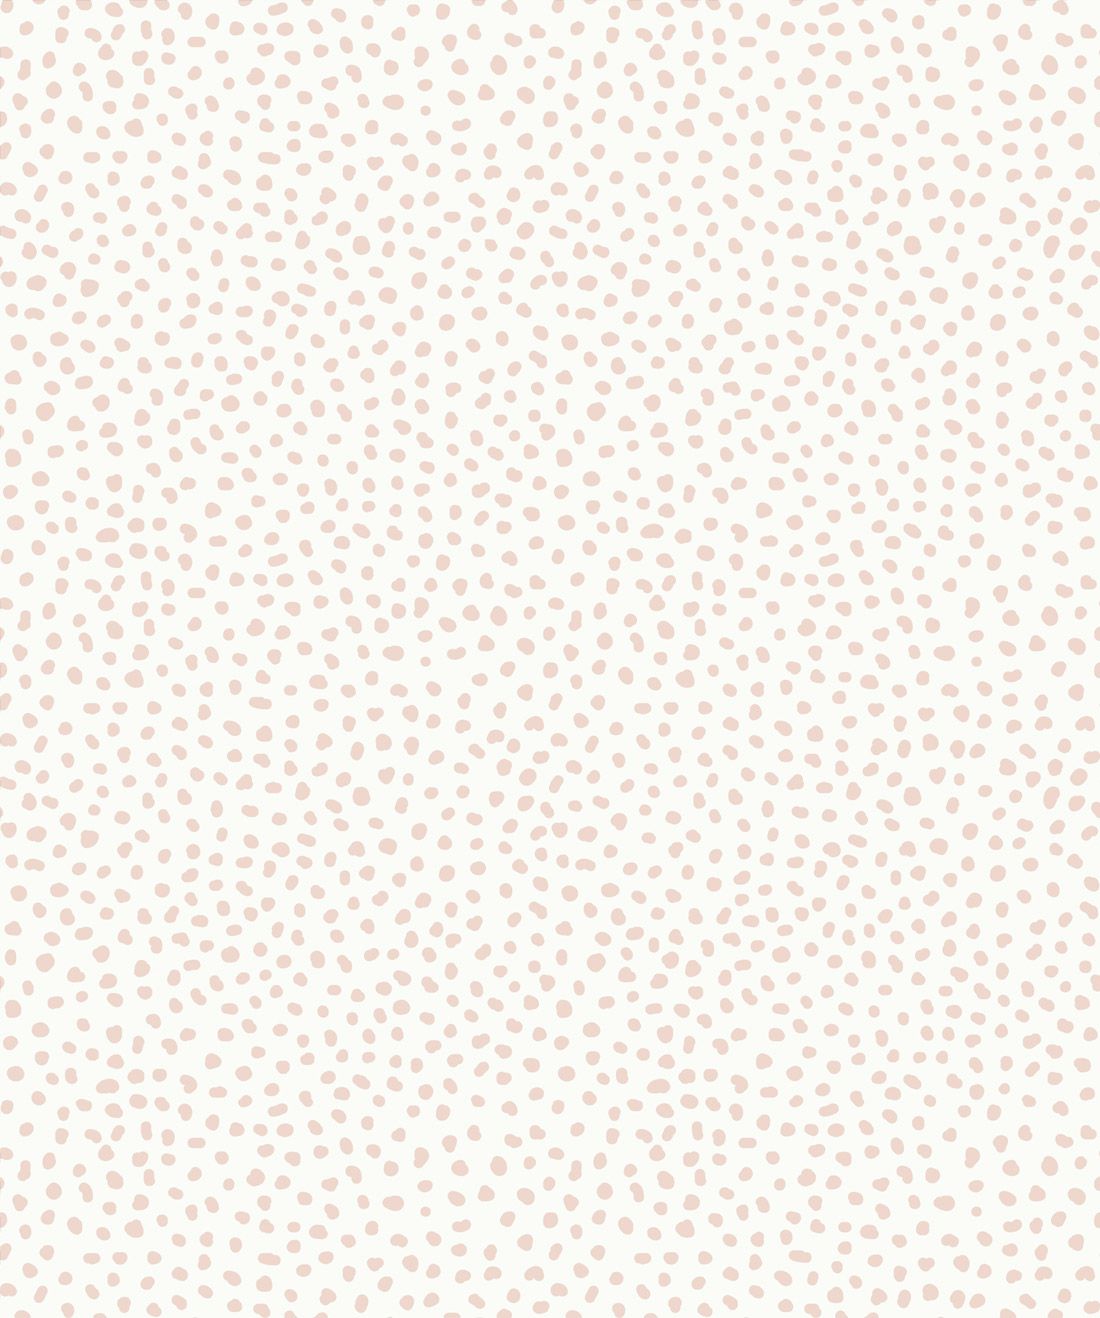 Dots grey polka hexagon white ffffff d3d3d3 0 wallpaper 4K HD